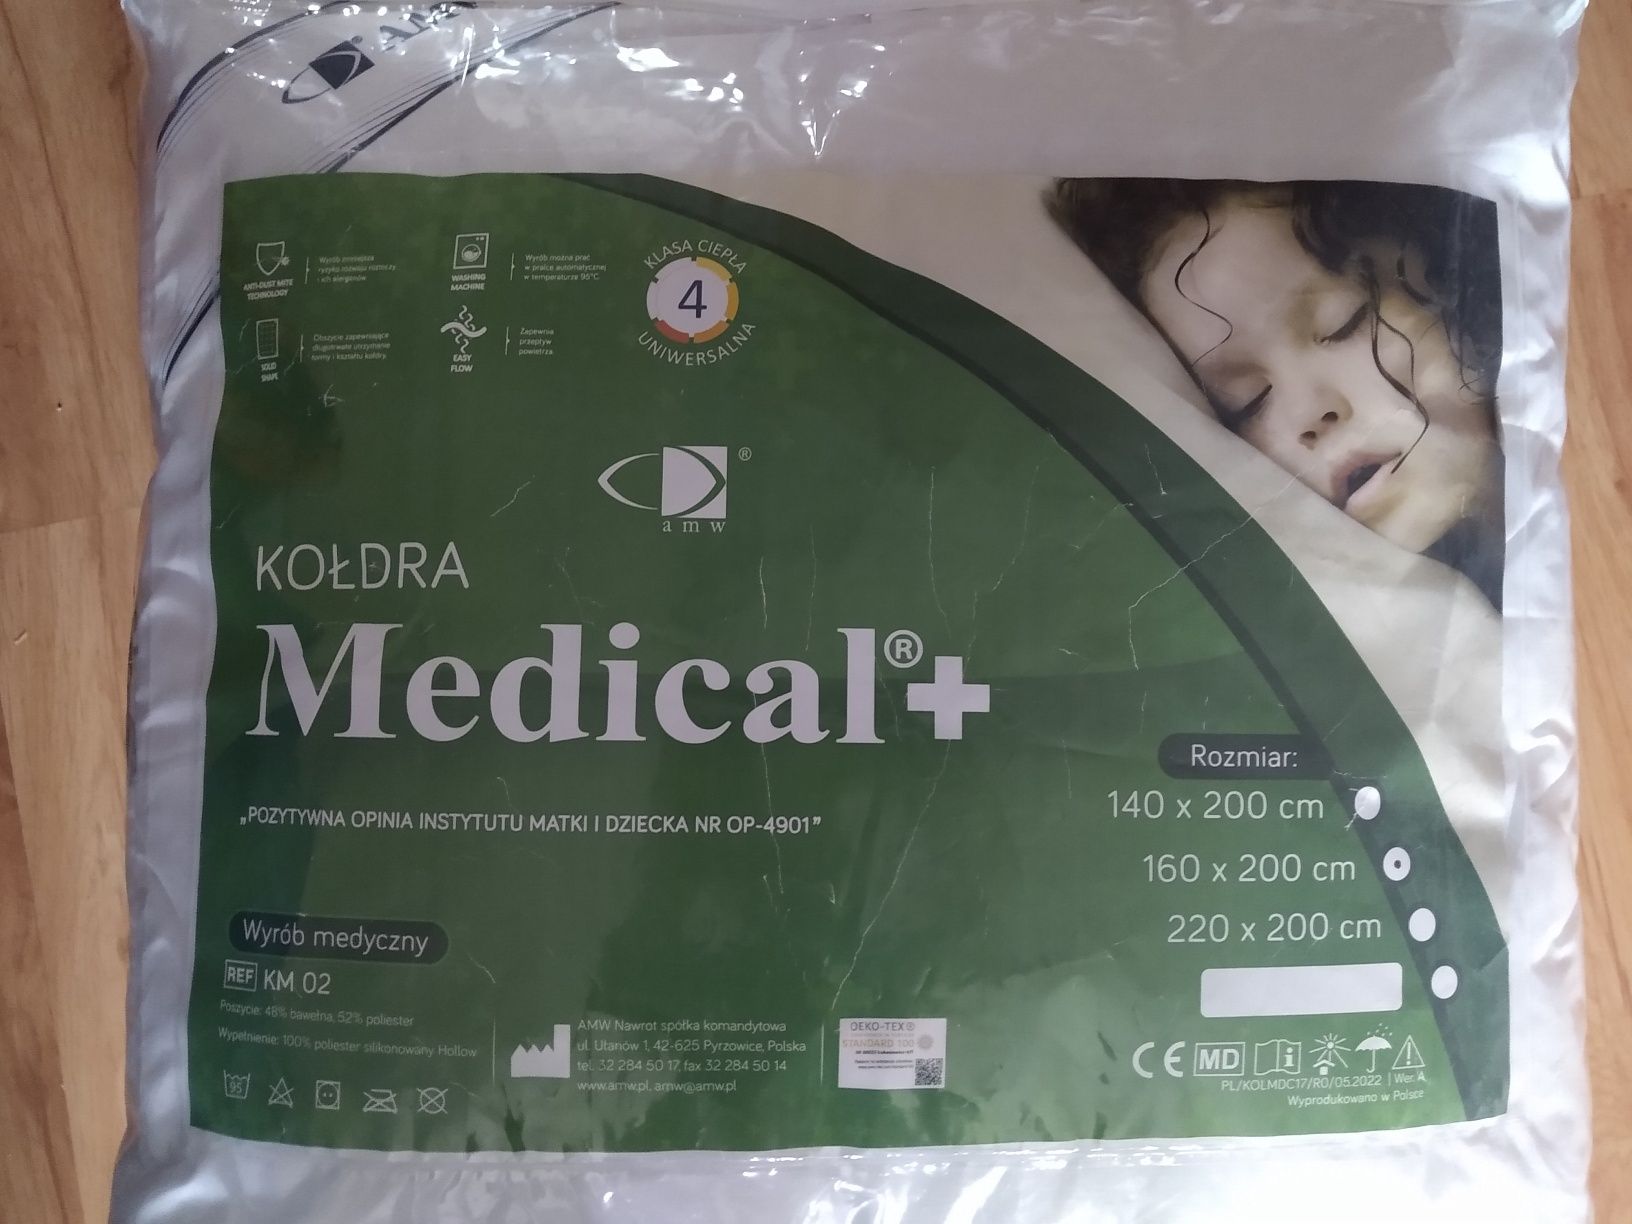 Kołdra Medical + nowa 160x200